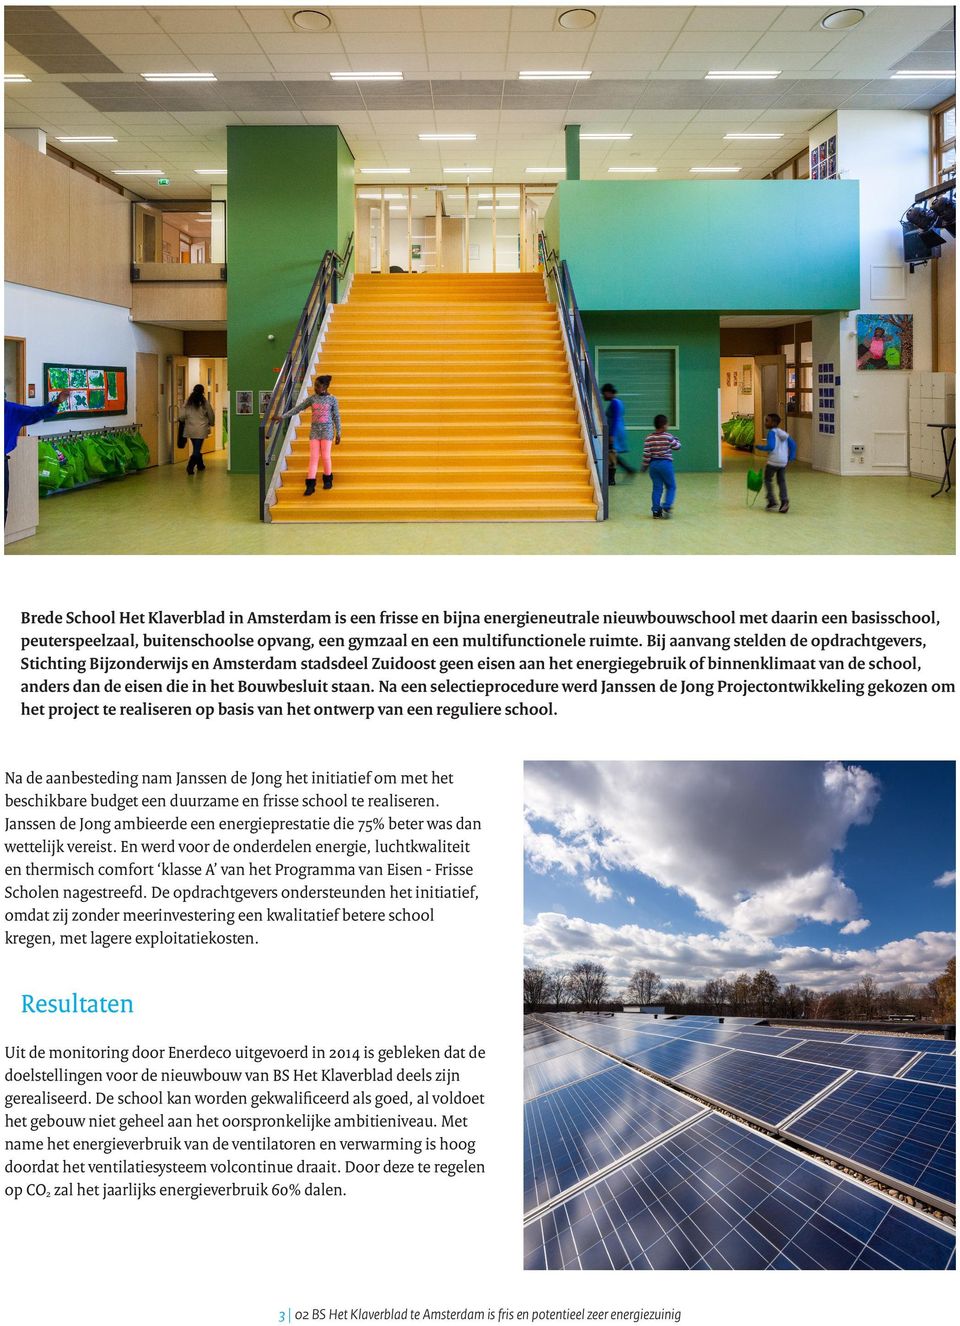 Bij aanvang stelden de opdrachtgevers, Stichting Bijzonderwijs en Amsterdam stadsdeel Zuidoost geen eisen aan het energiegebruik of binnenklimaat van de school, anders dan de eisen die in het